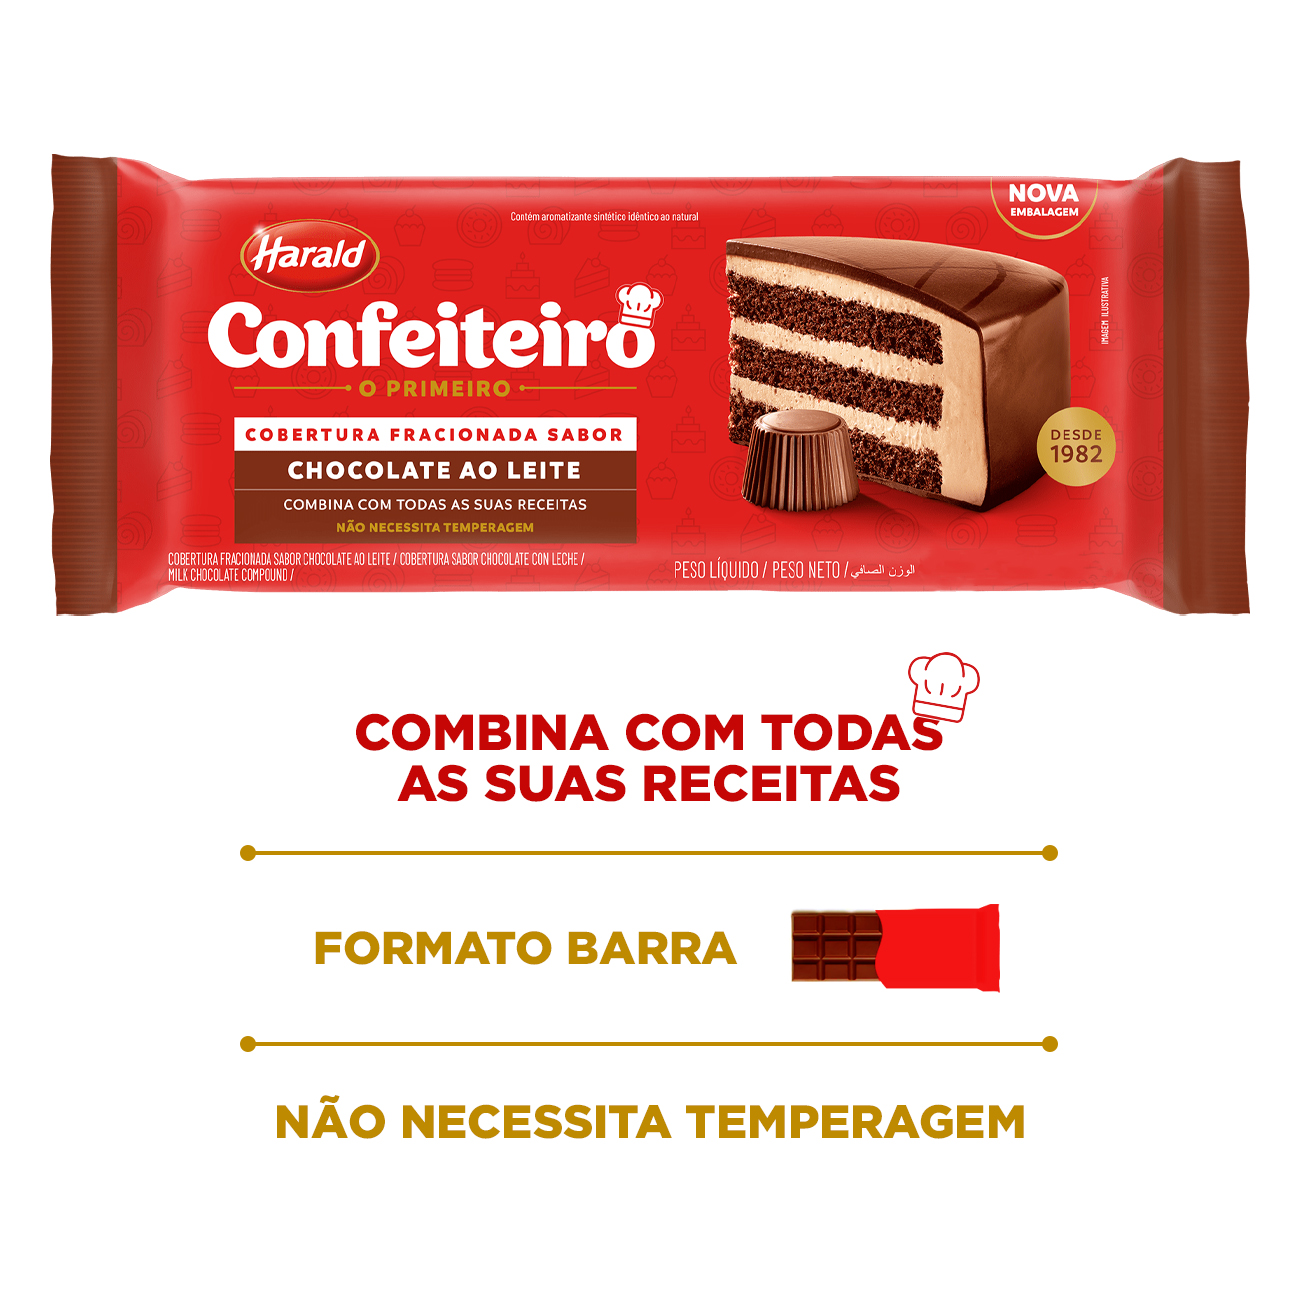 Cobertura de Chocolate em Barra Harald Confeiteiro Fracionada ao Leite 2,1kg